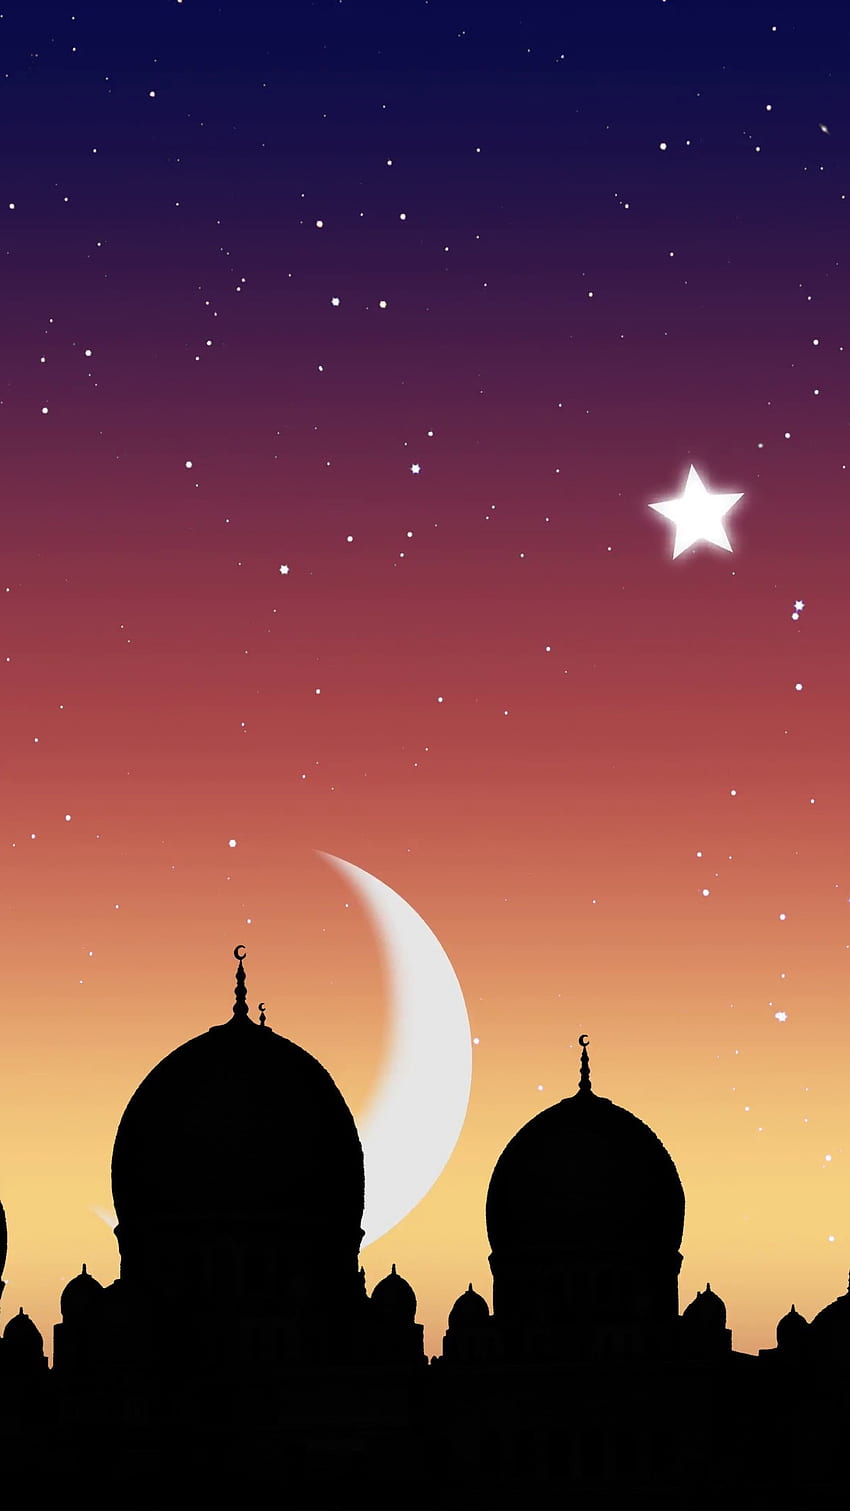 Tinh tế, tuyệt đẹp và ý nghĩa là những từ cảm nhận khi sử dụng hình nền đáng yêu của phone vào mùa Ramadan. Hãy mang sắc hoa cao quý của Ramadan đến với đường nét thiết kế của điện thoại của bạn, để cùng đón chào mùa Ramadan này thật đặc biệt và đầy ý nghĩa.